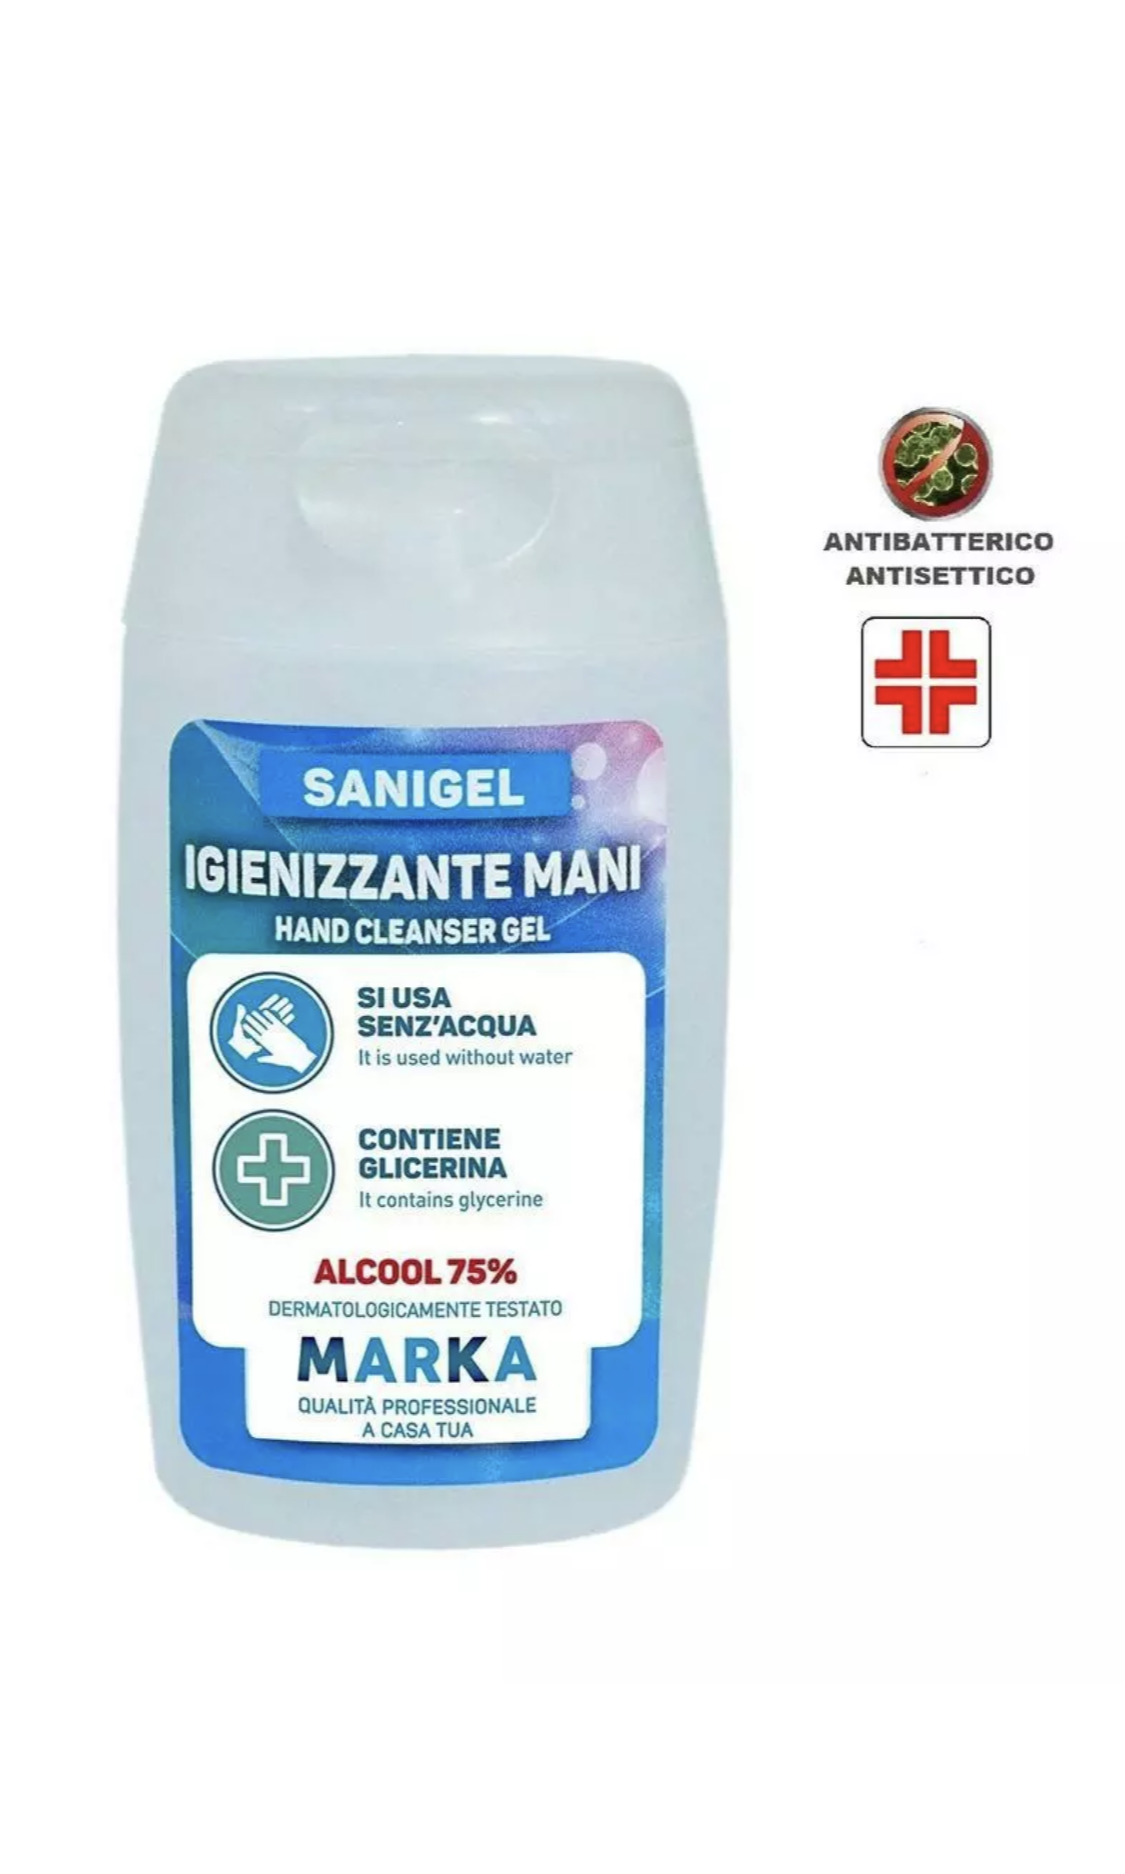 Gel Igienizzante Sanigel 100ml alcool 75%